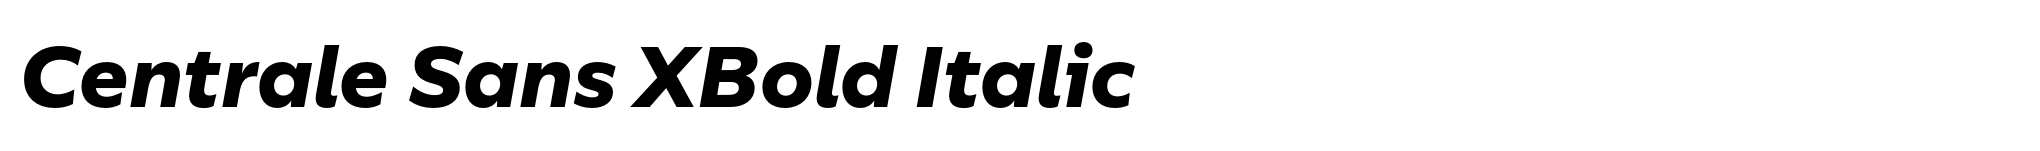 Centrale Sans XBold Italic image